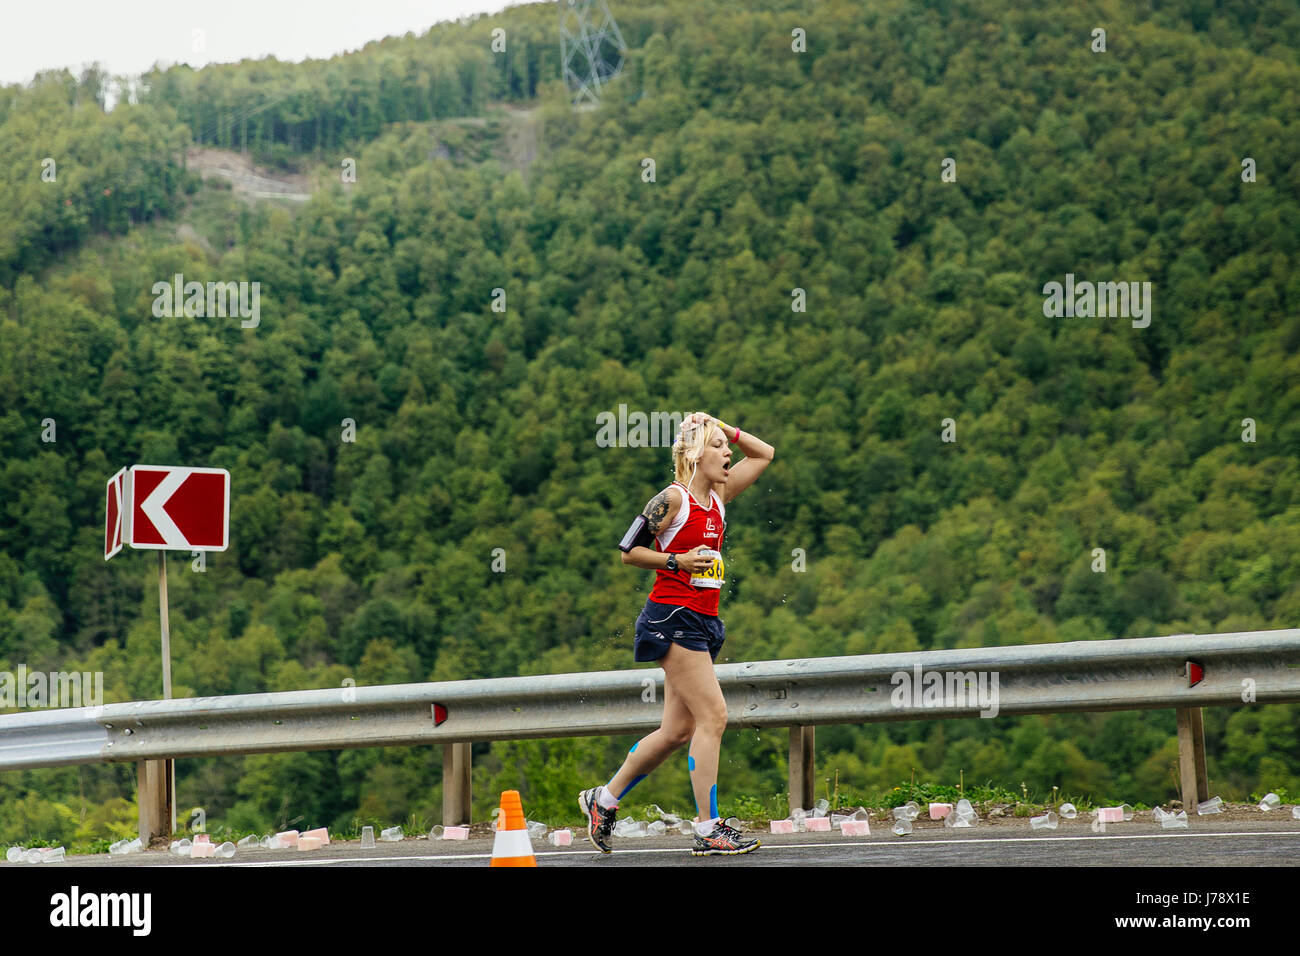 Rosa Khutor, Russie - Mai 7, 2017 : young woman runner sur point d'eau dans une éponge à la main avec de l'eau dans le ressort de la course marathon de montagne Banque D'Images